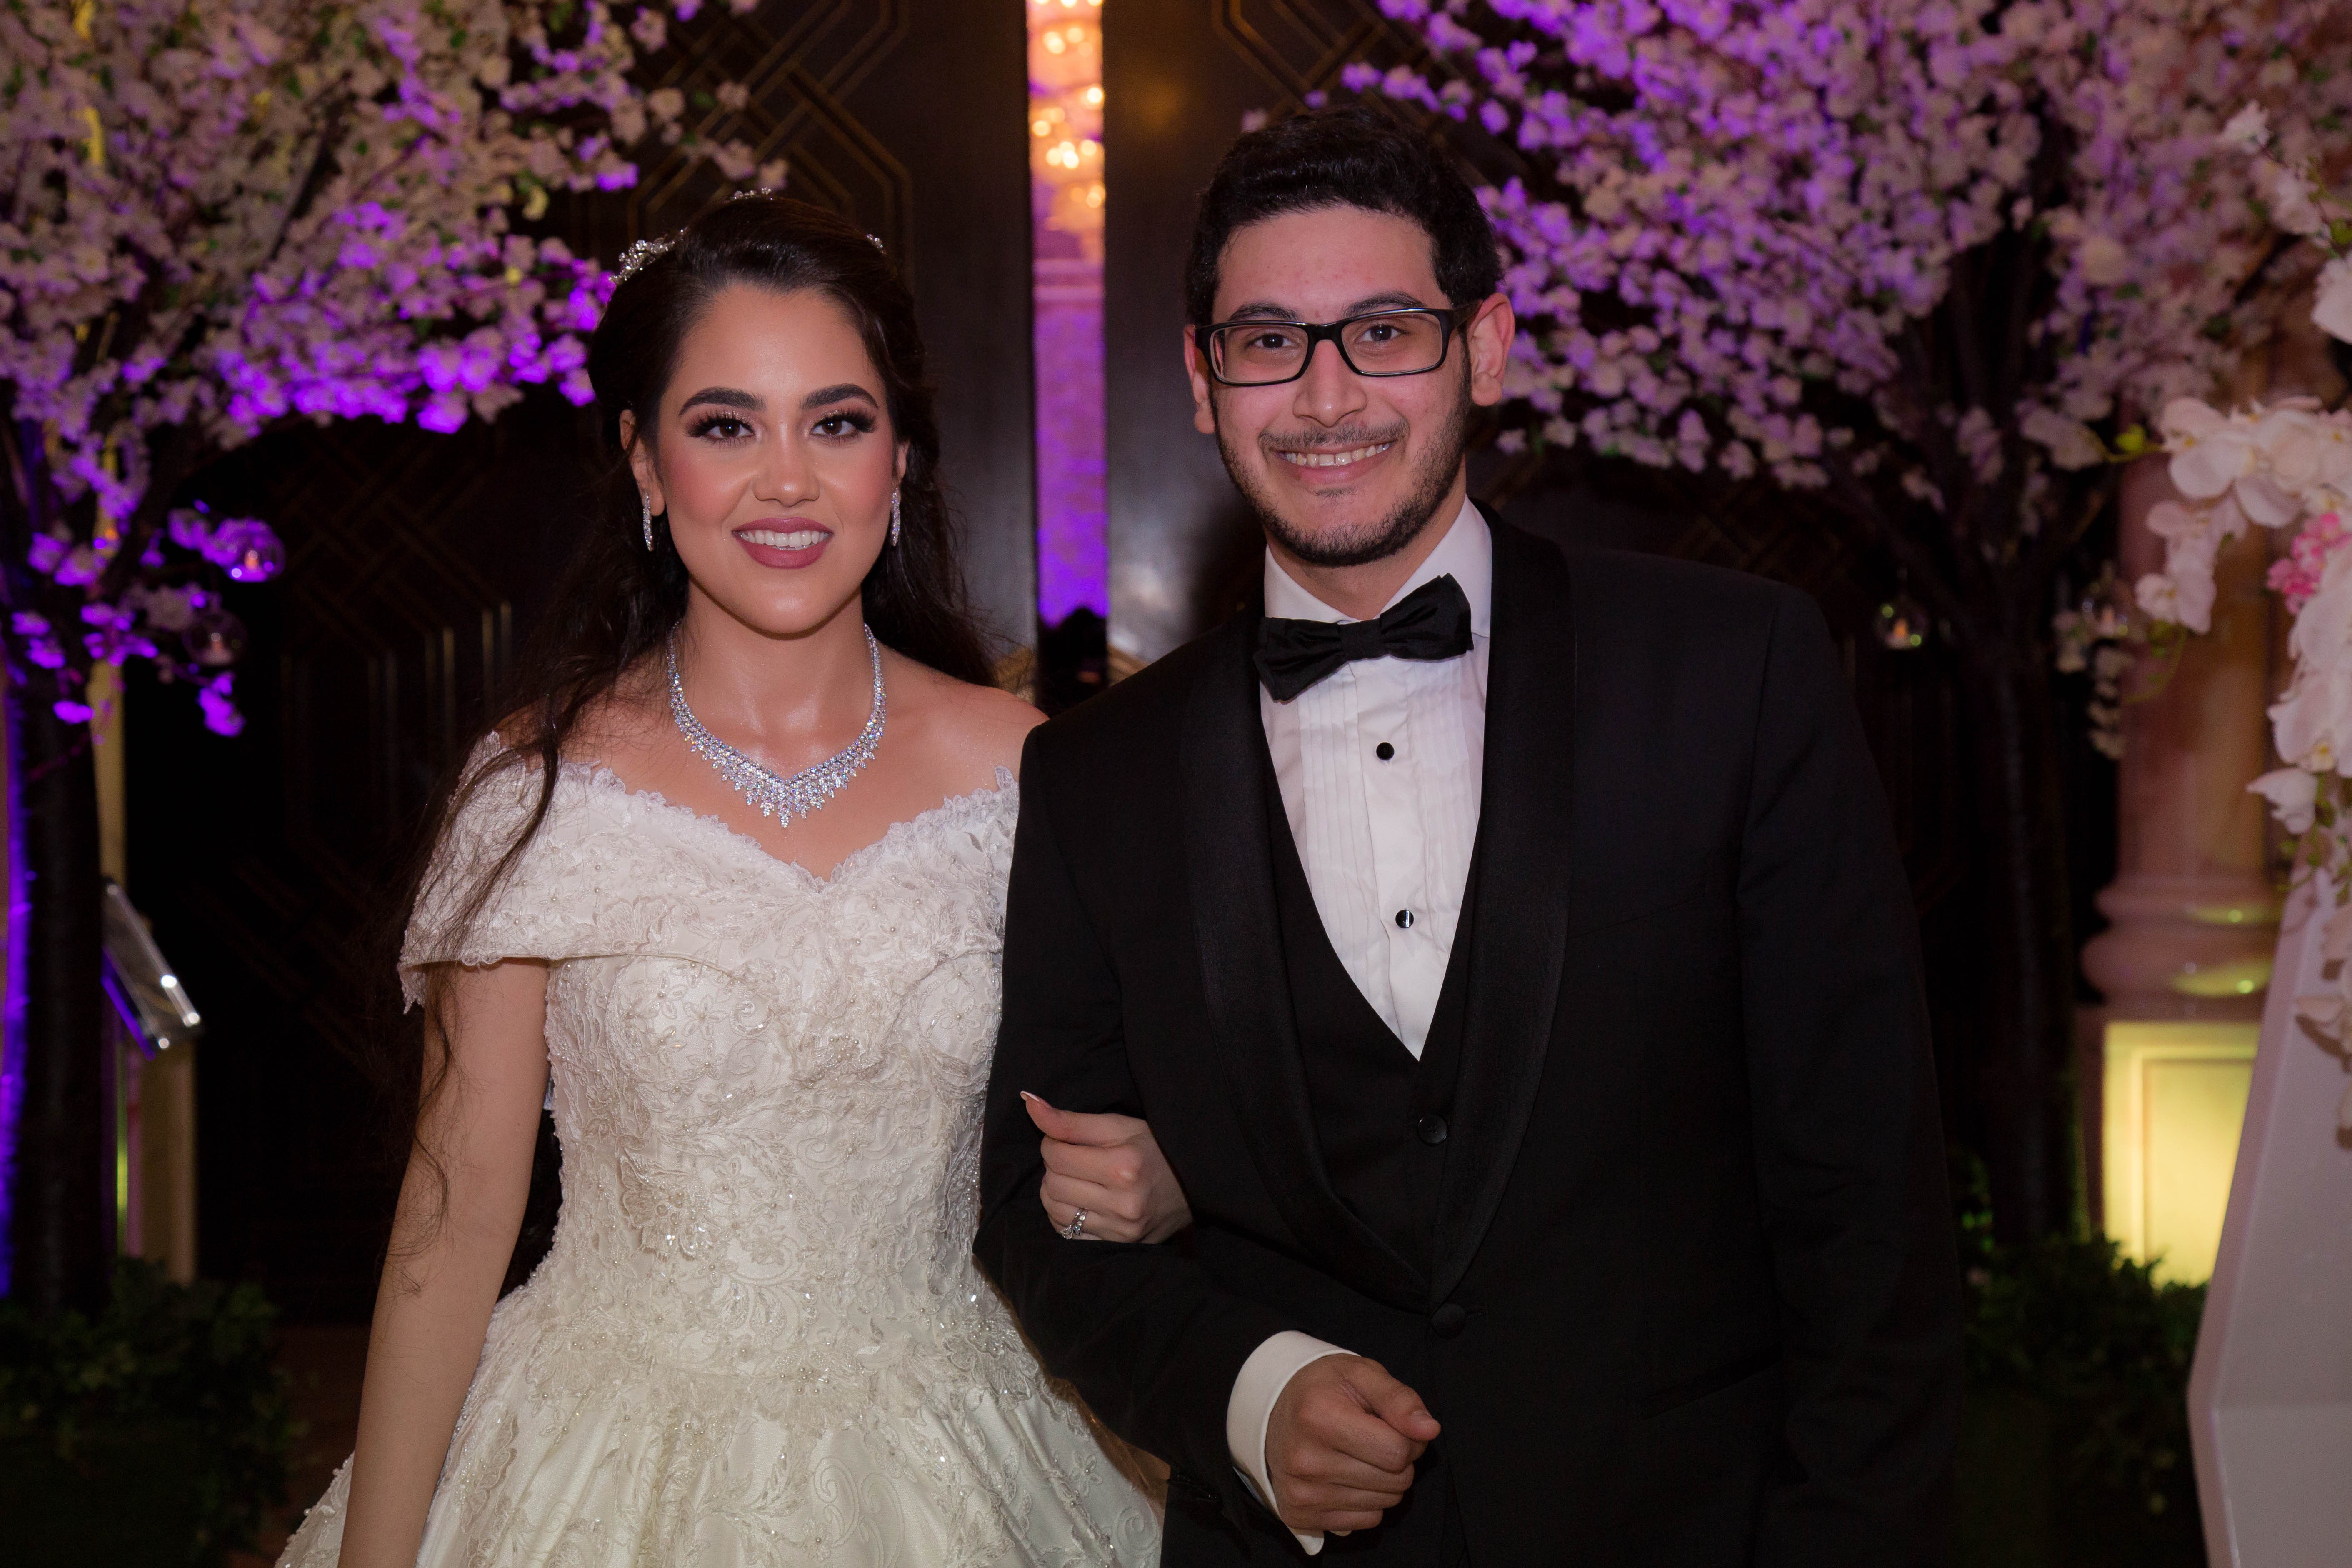 الشيخ نهيان بن مبارك خلال حضوره حفل الزفاف